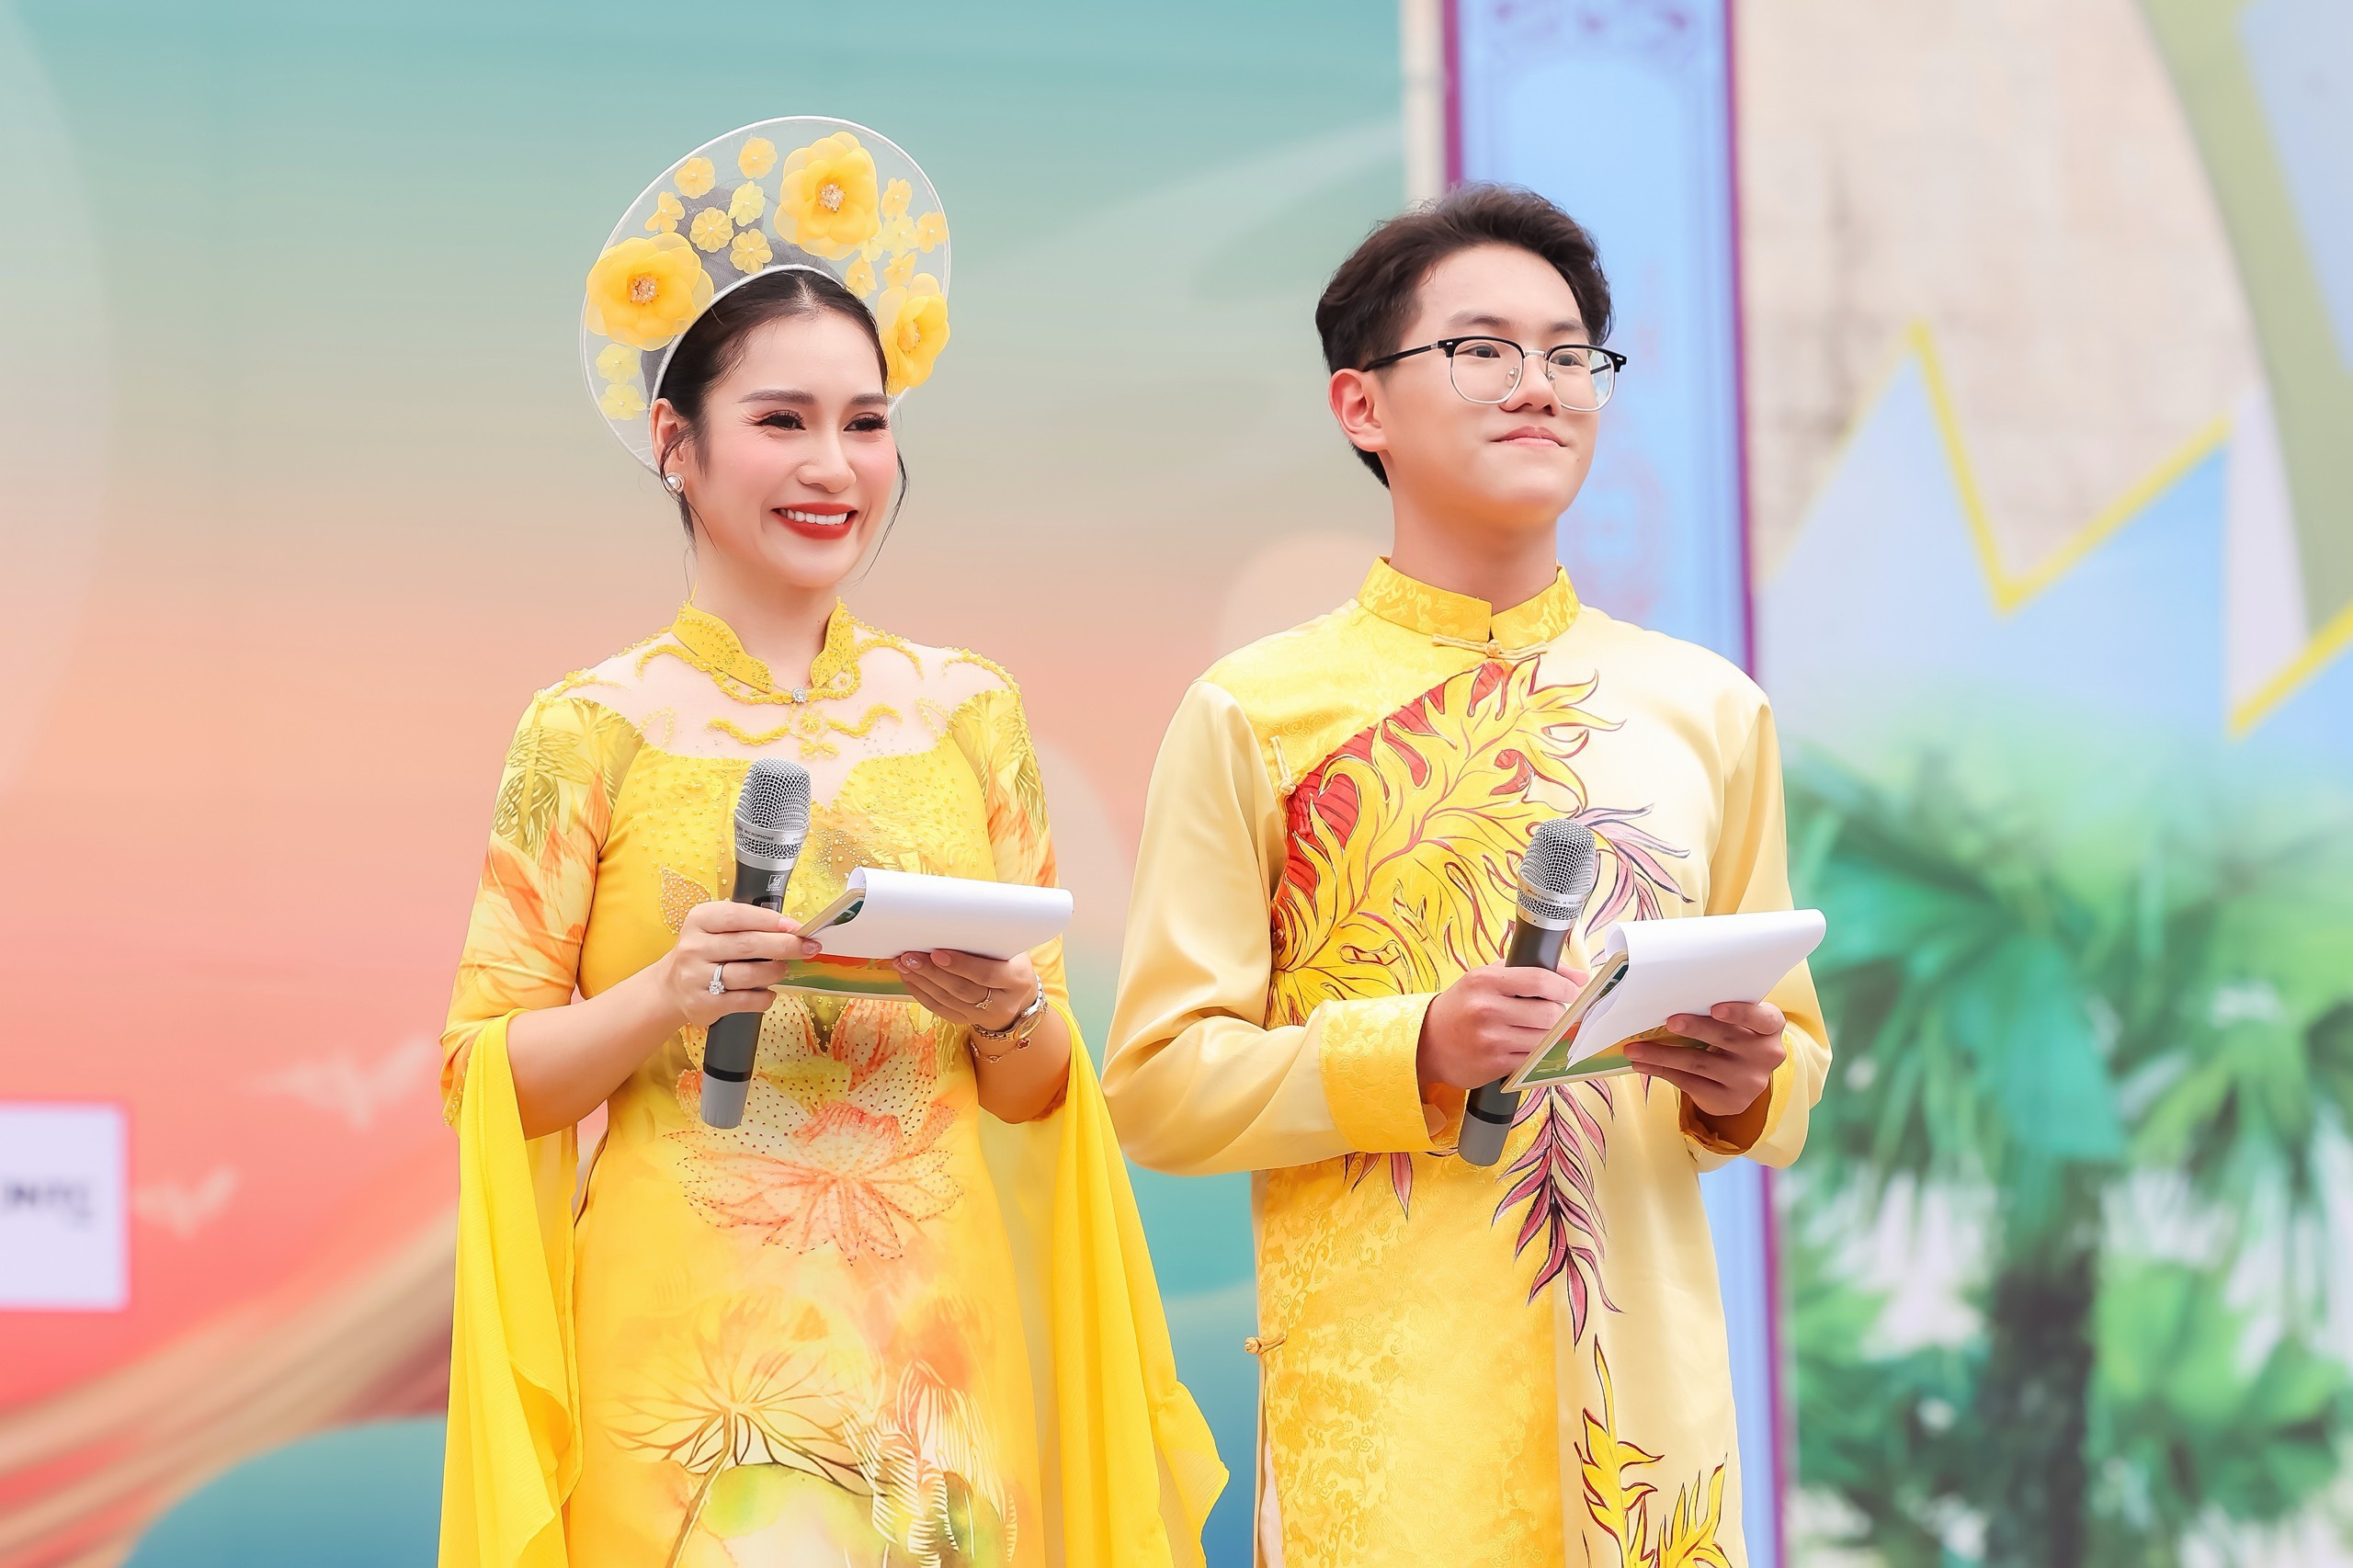 MC Thanh Mai – MC Hoàng Gia Bảo, Ca sĩ Bảo Phương và Top 15 Model Kid vinh dự được vinh danh trao tặng danh hiệu sứ giả truyền thông lan tỏa thông điệp “Xanh”